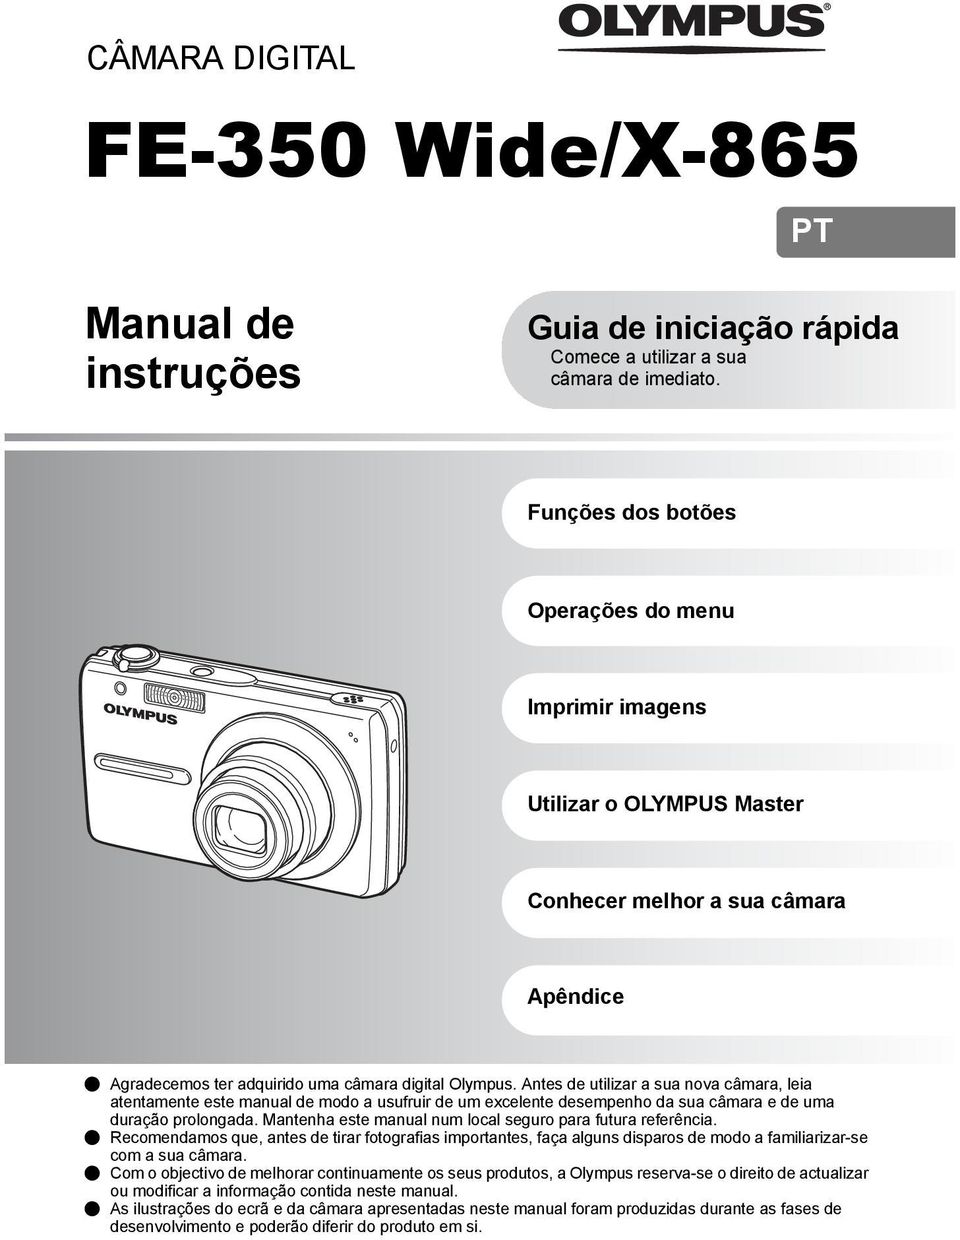 Antes de utilizar a sua nova câmara, leia atentamente este manual de modo a usufruir de um excelente desempenho da sua câmara e de uma duração prolongada.